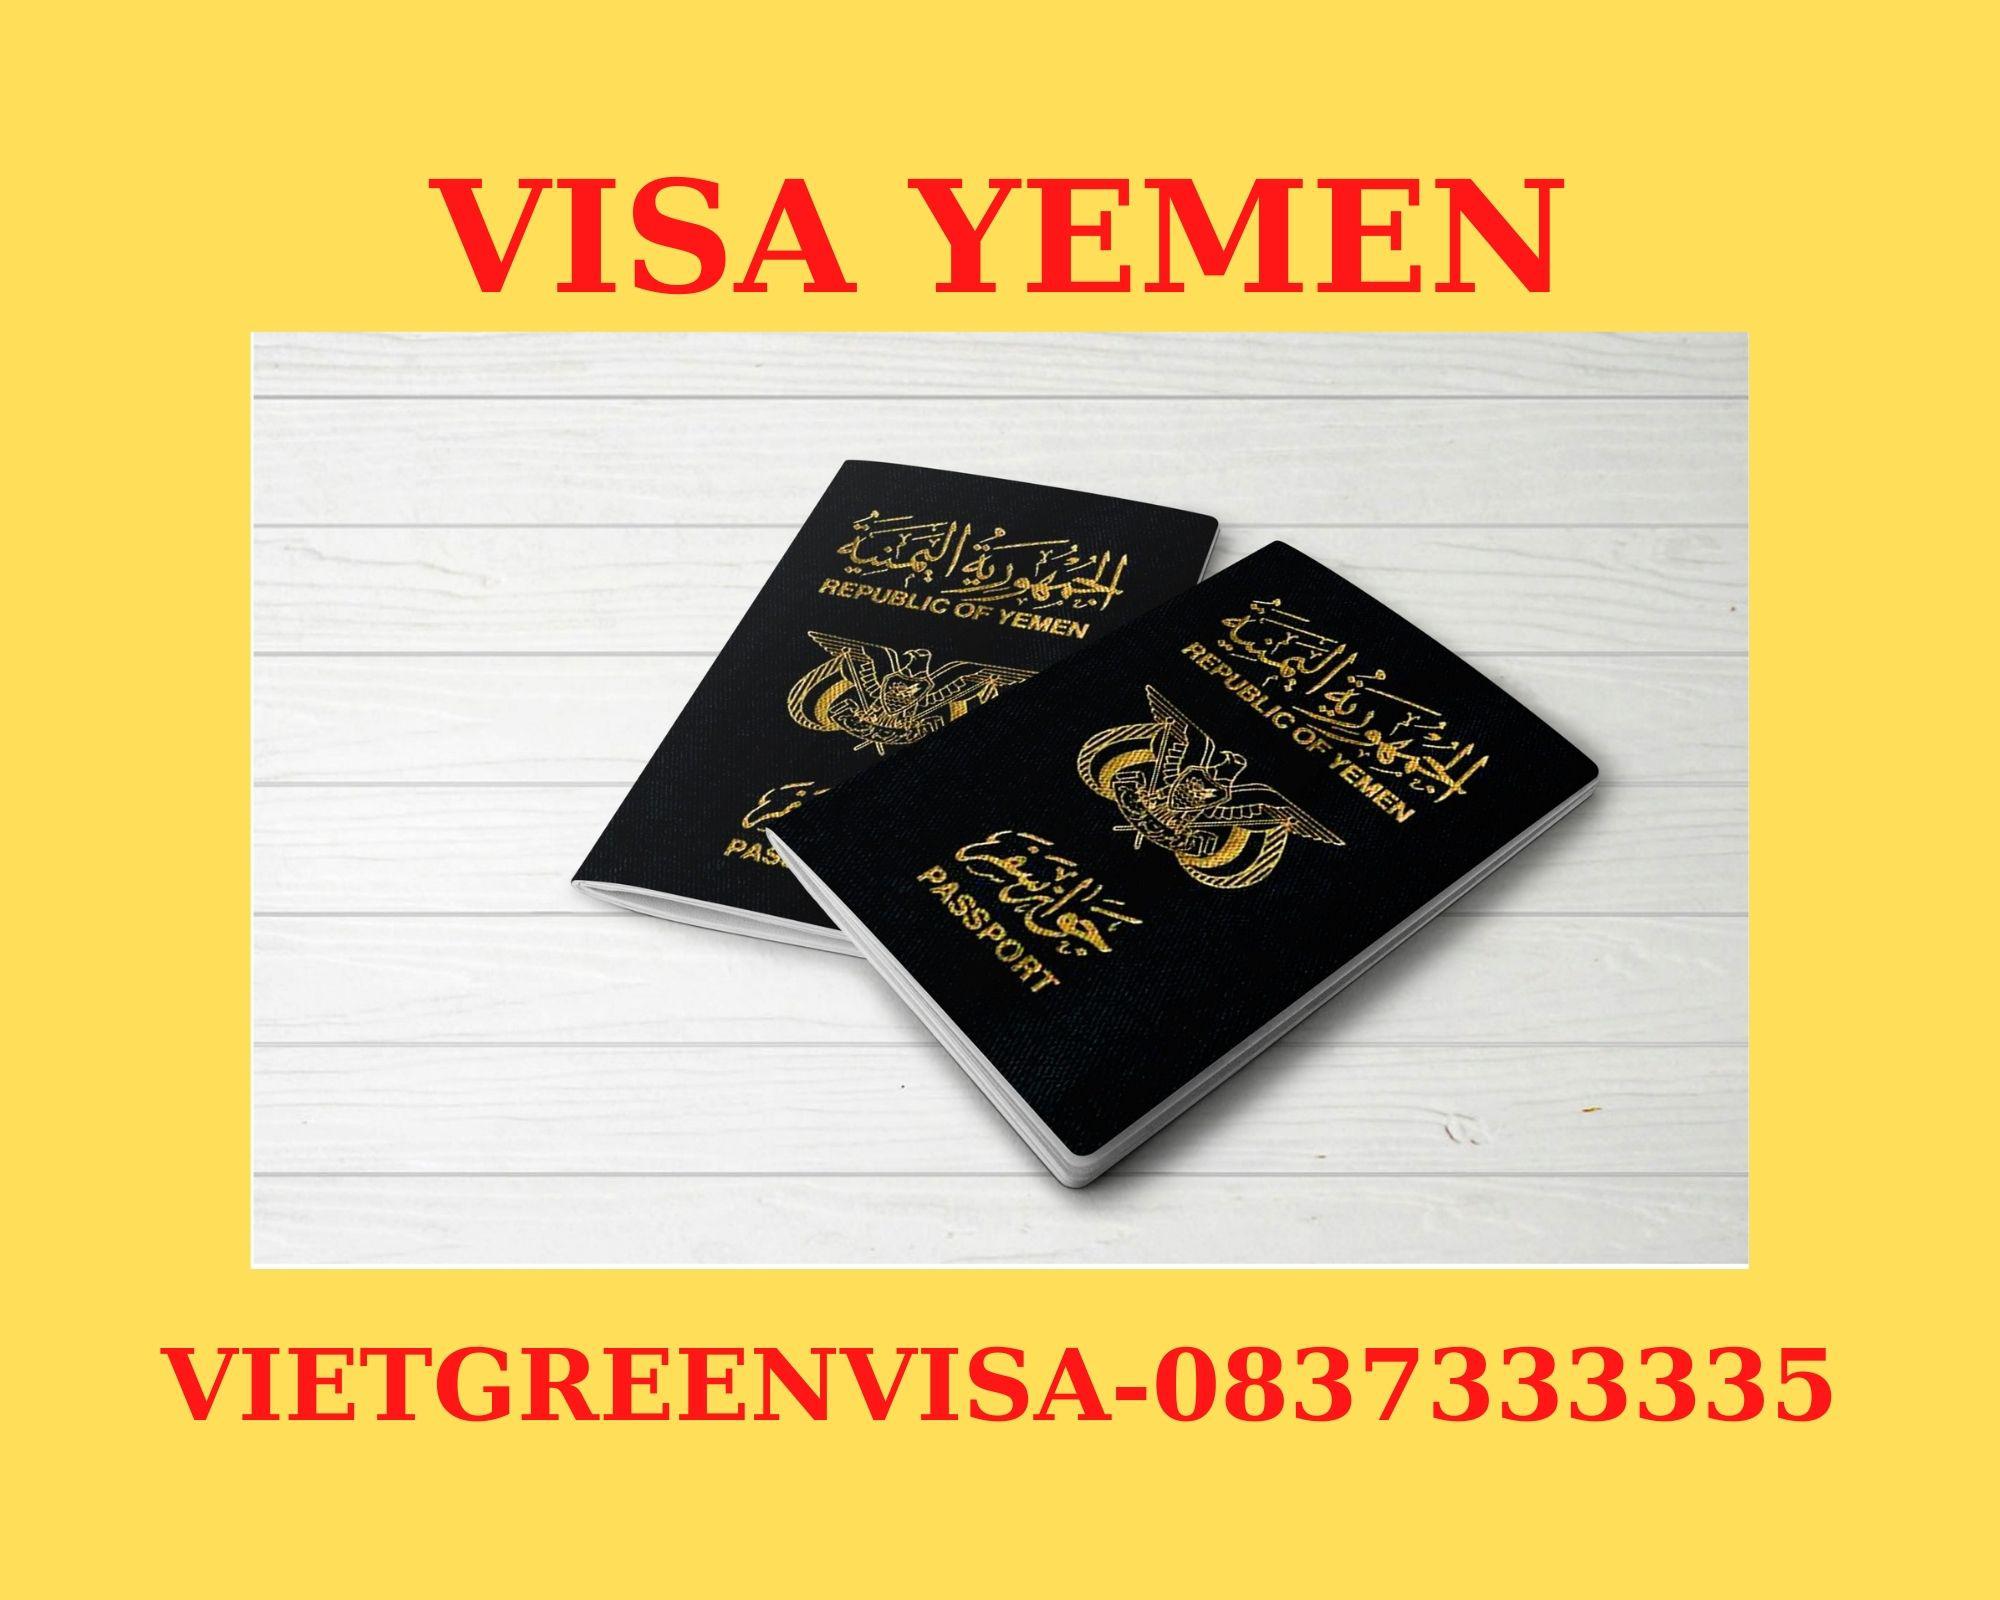 Dịch vụ visa Yemen lưu trú 30 ngày tại Hà Nội, TP HCM